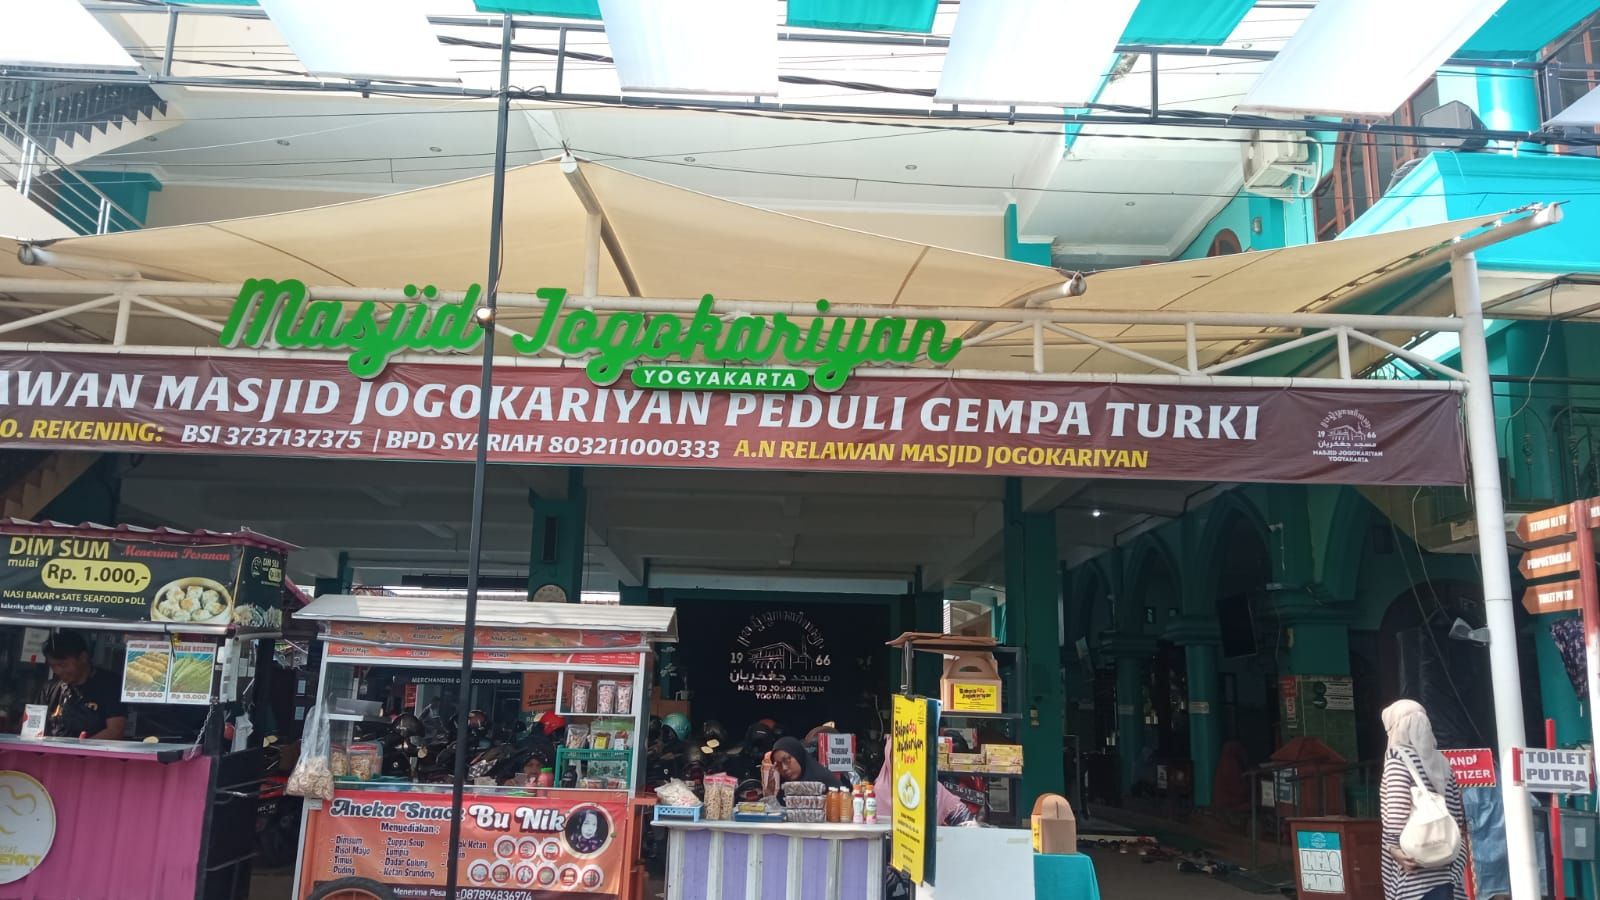 Masjid Jogokaryan Yogyakarta tumbuh dan mengembangkan ekonomi umat.